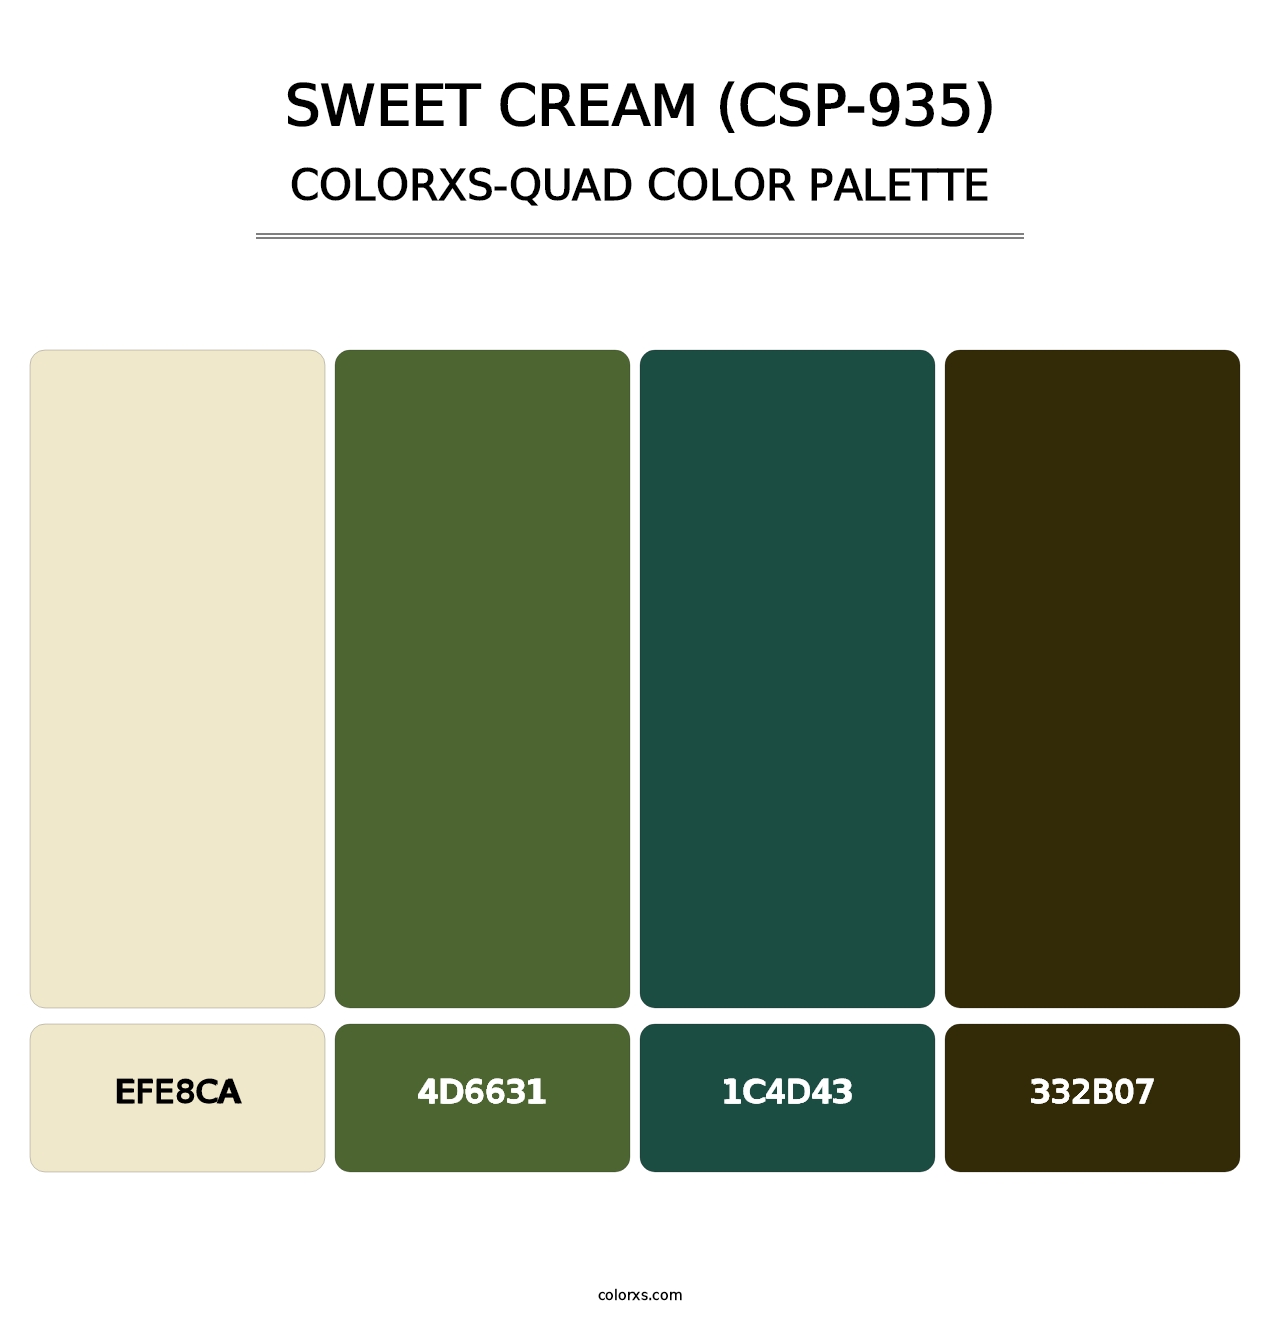 Sweet Cream (CSP-935) - Colorxs Quad Palette